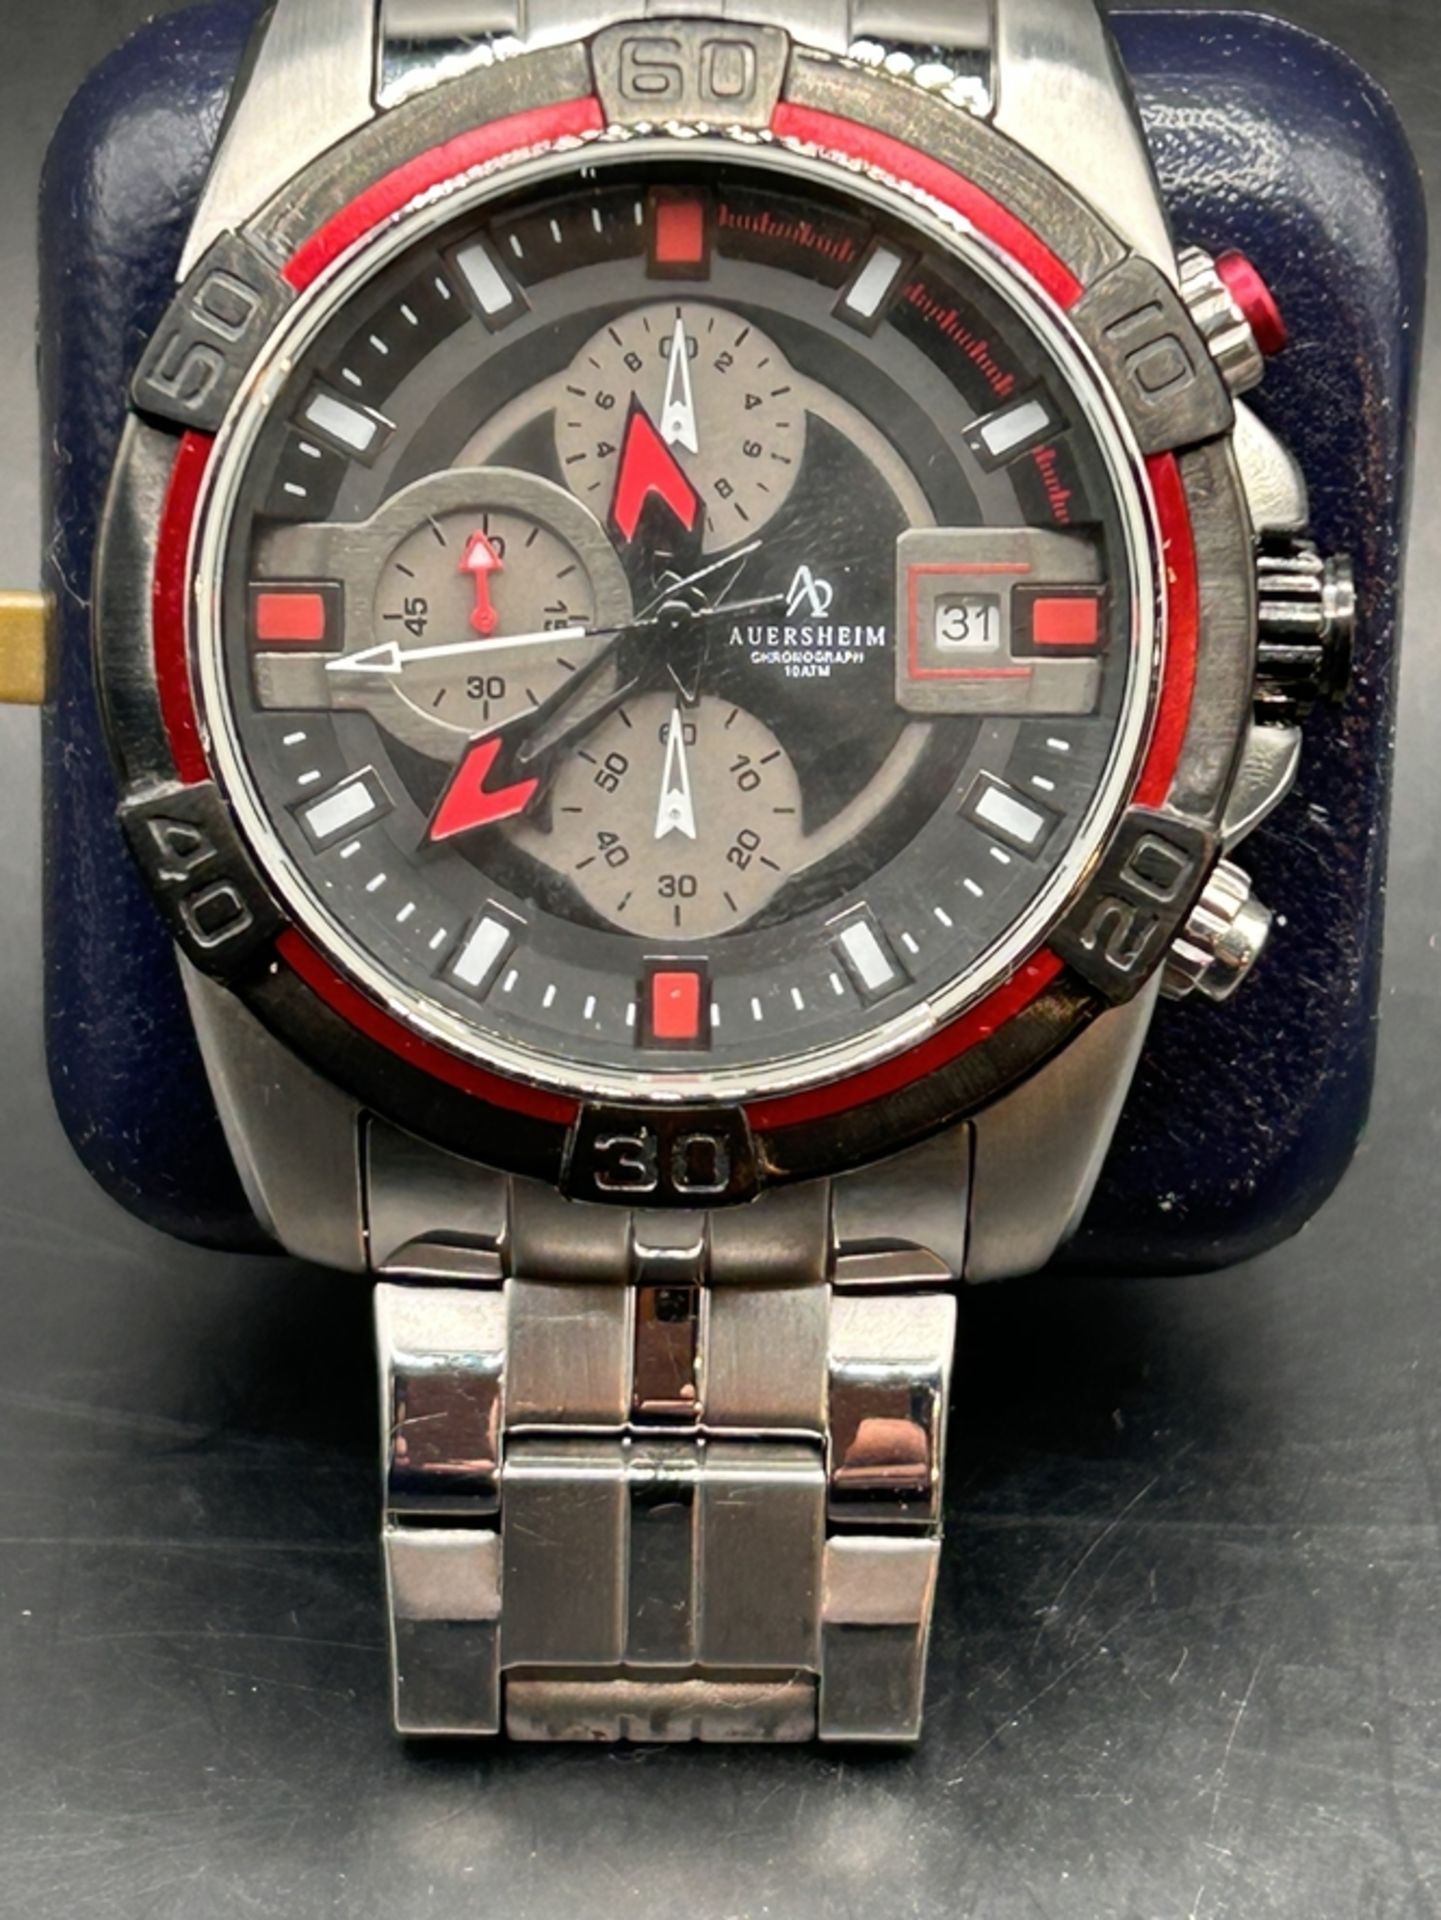 Quartz Armbanduhr Auersheim Chronometer 1T984, orig. Band, optisch gut erhalten, nicht überprüft